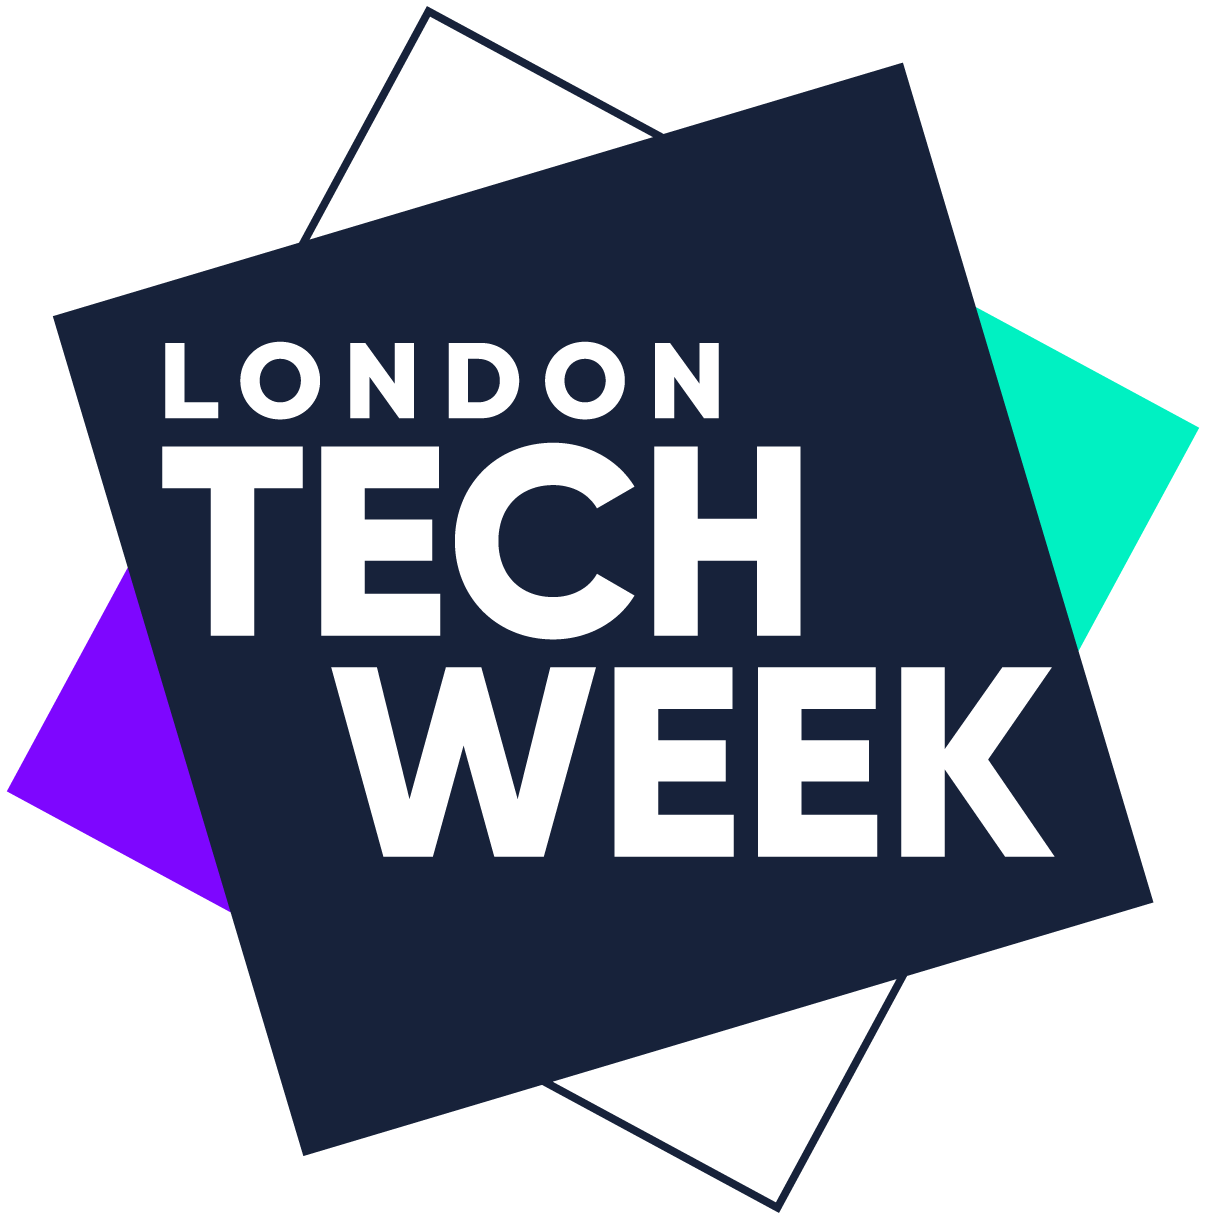 Quinlan spoke at London Tech Week SpaceLink